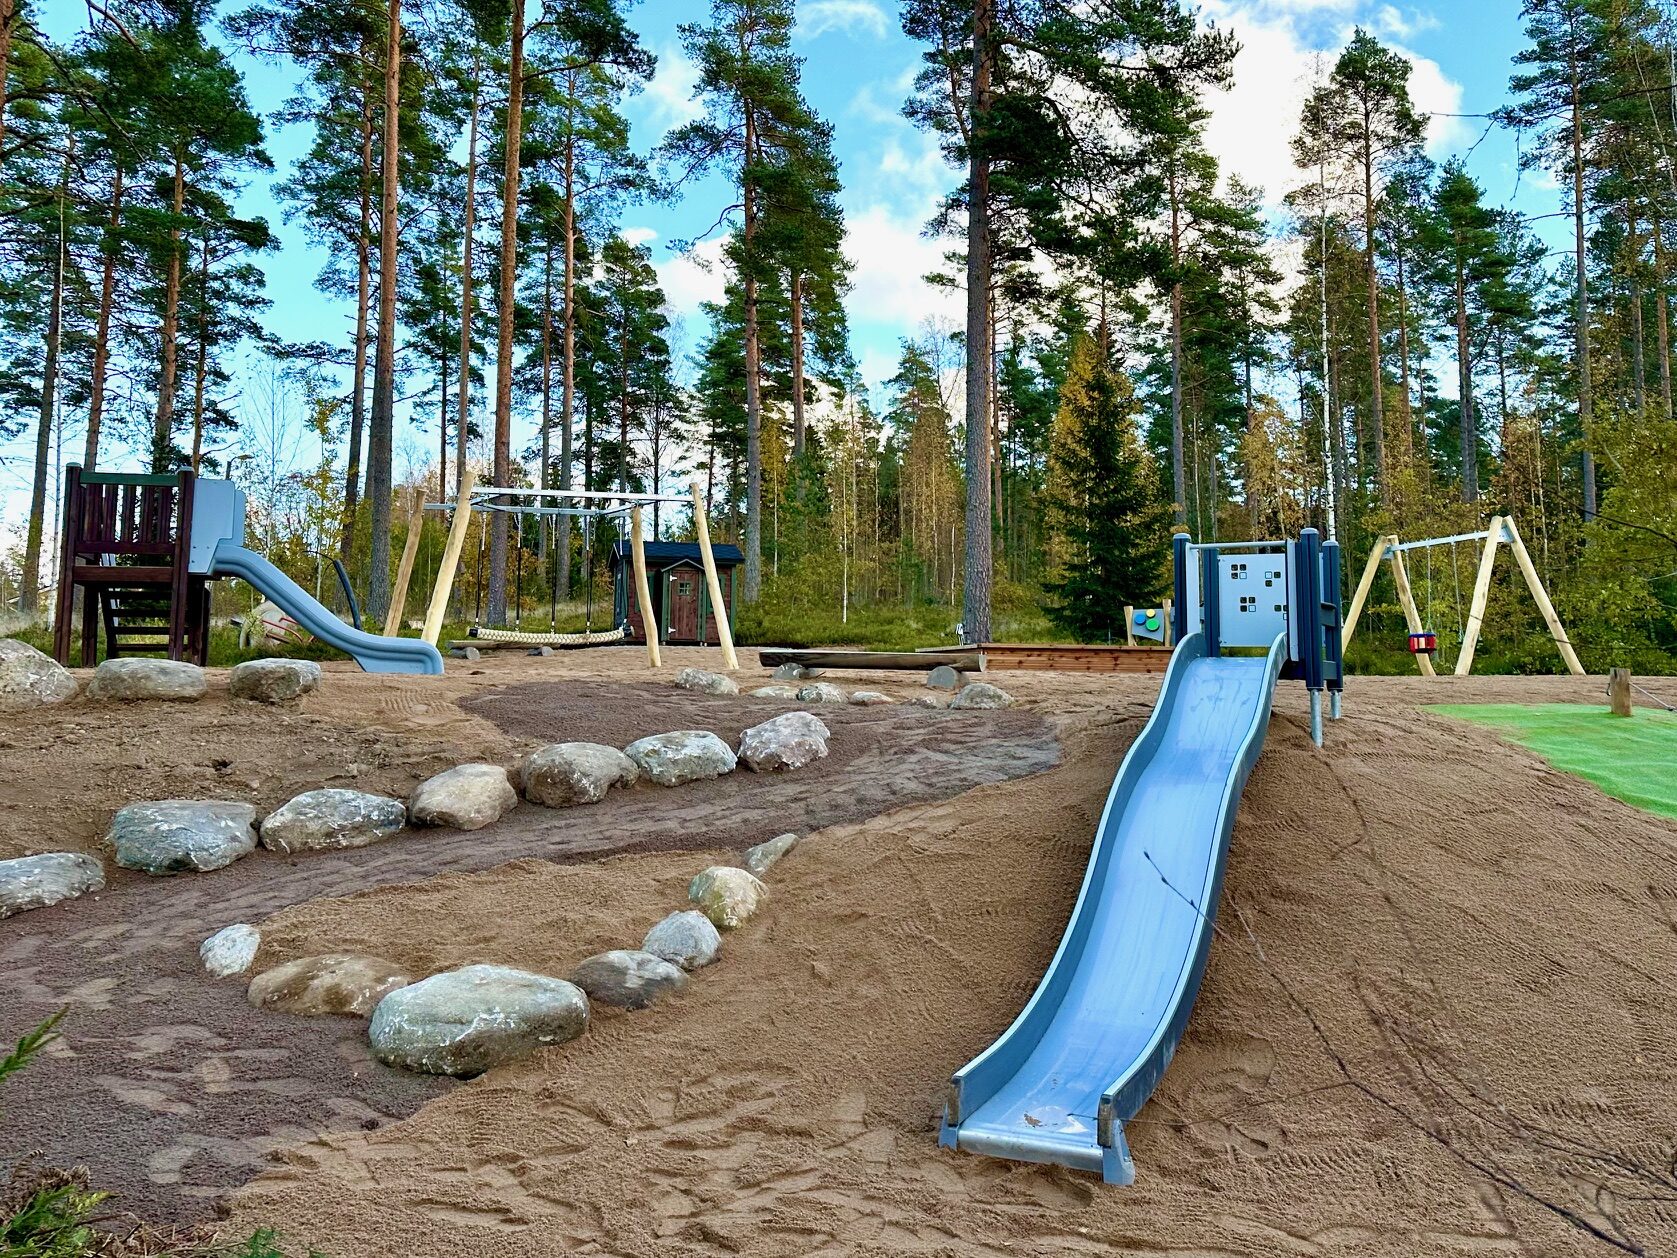 Hossilantien leikkipuistossa on mukava metsäinen tunnelma ja paljon erilaisia leikkivälineitä.